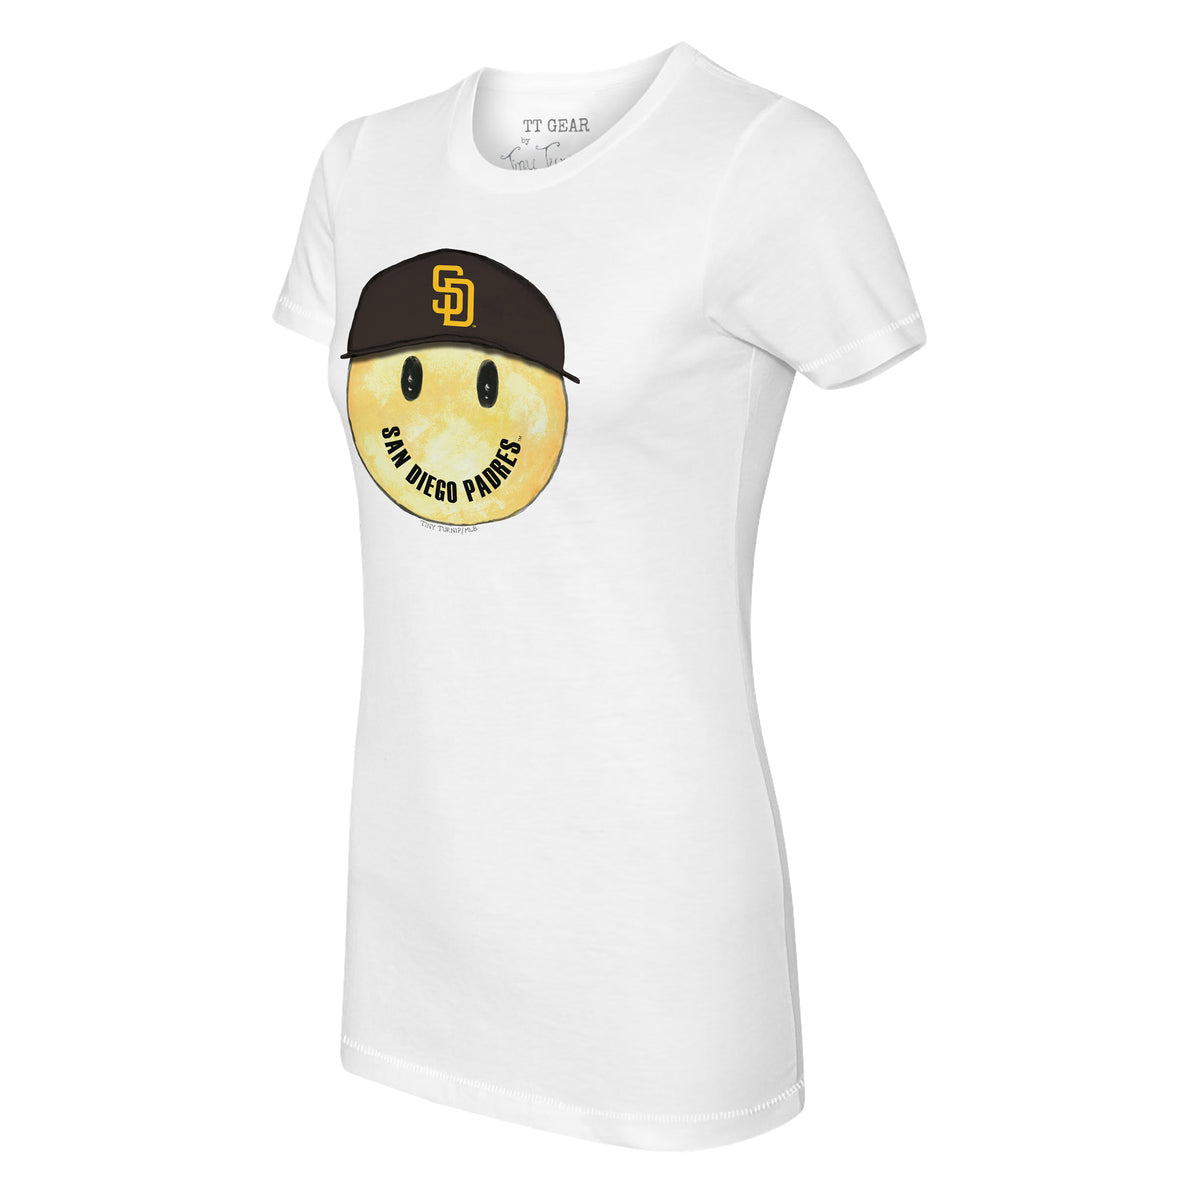 San Diego Padres Smiley Tee Shirt